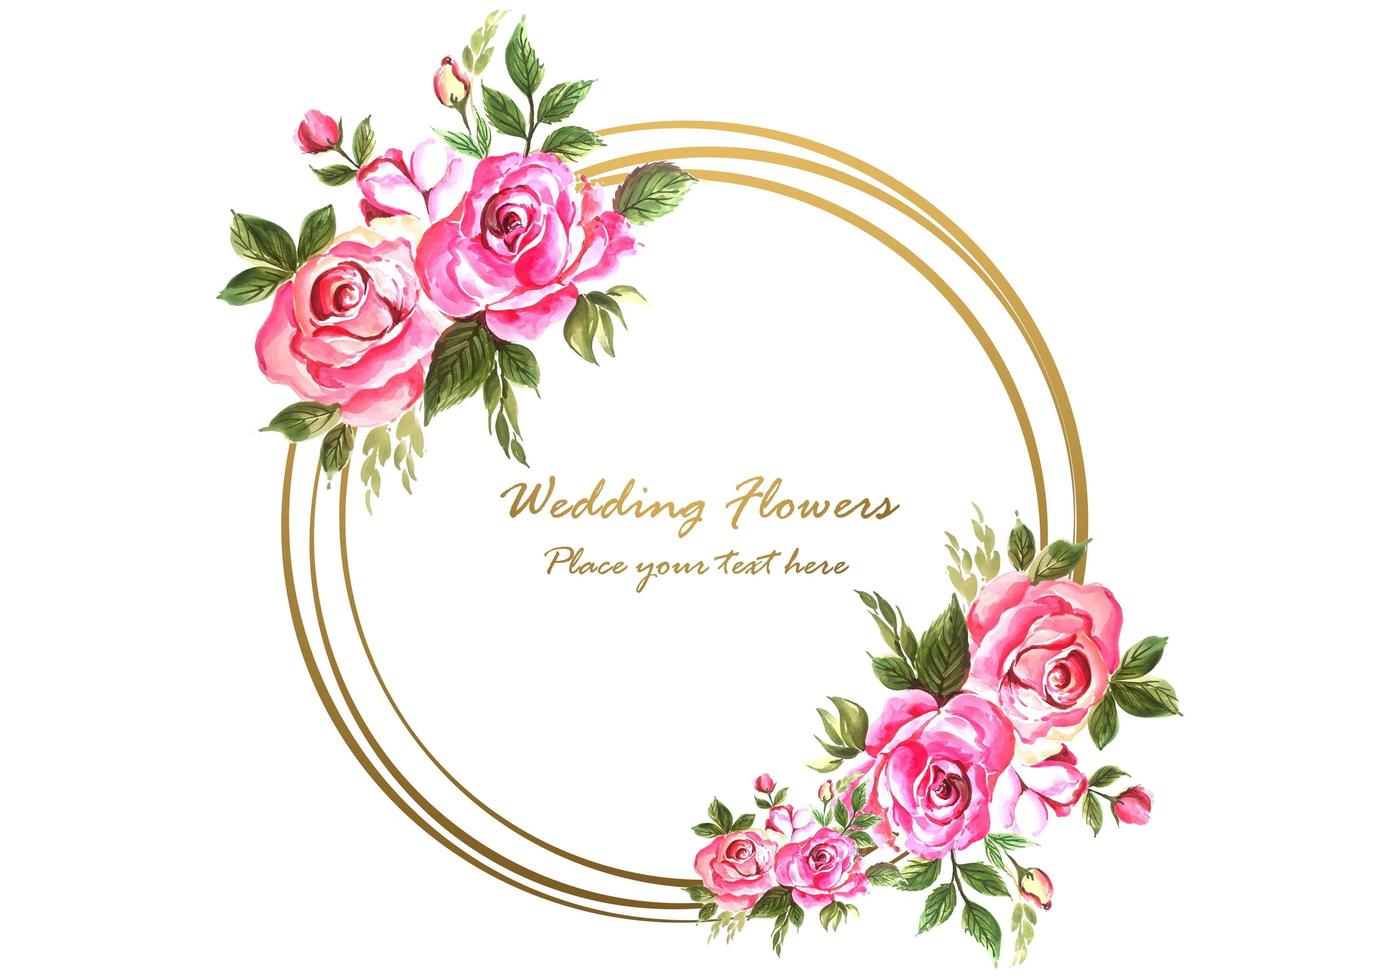 Anniversaire de mariage décoratif avec cadre floral circulaire pour carte de voeux vecteur